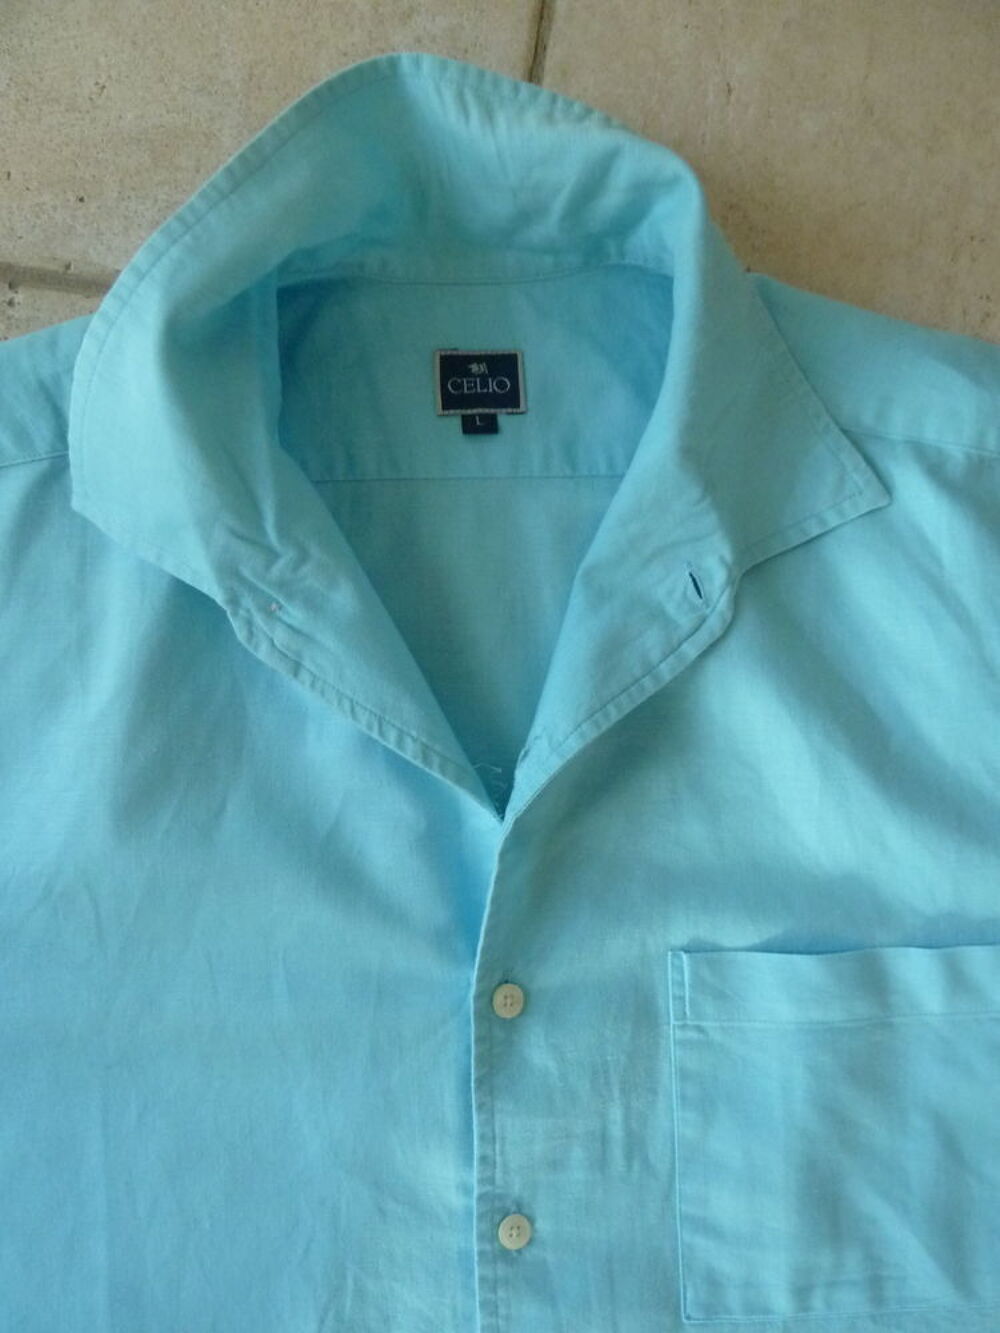 chemisette lin homme Celio bleu turquoise taille L 52 Vtements